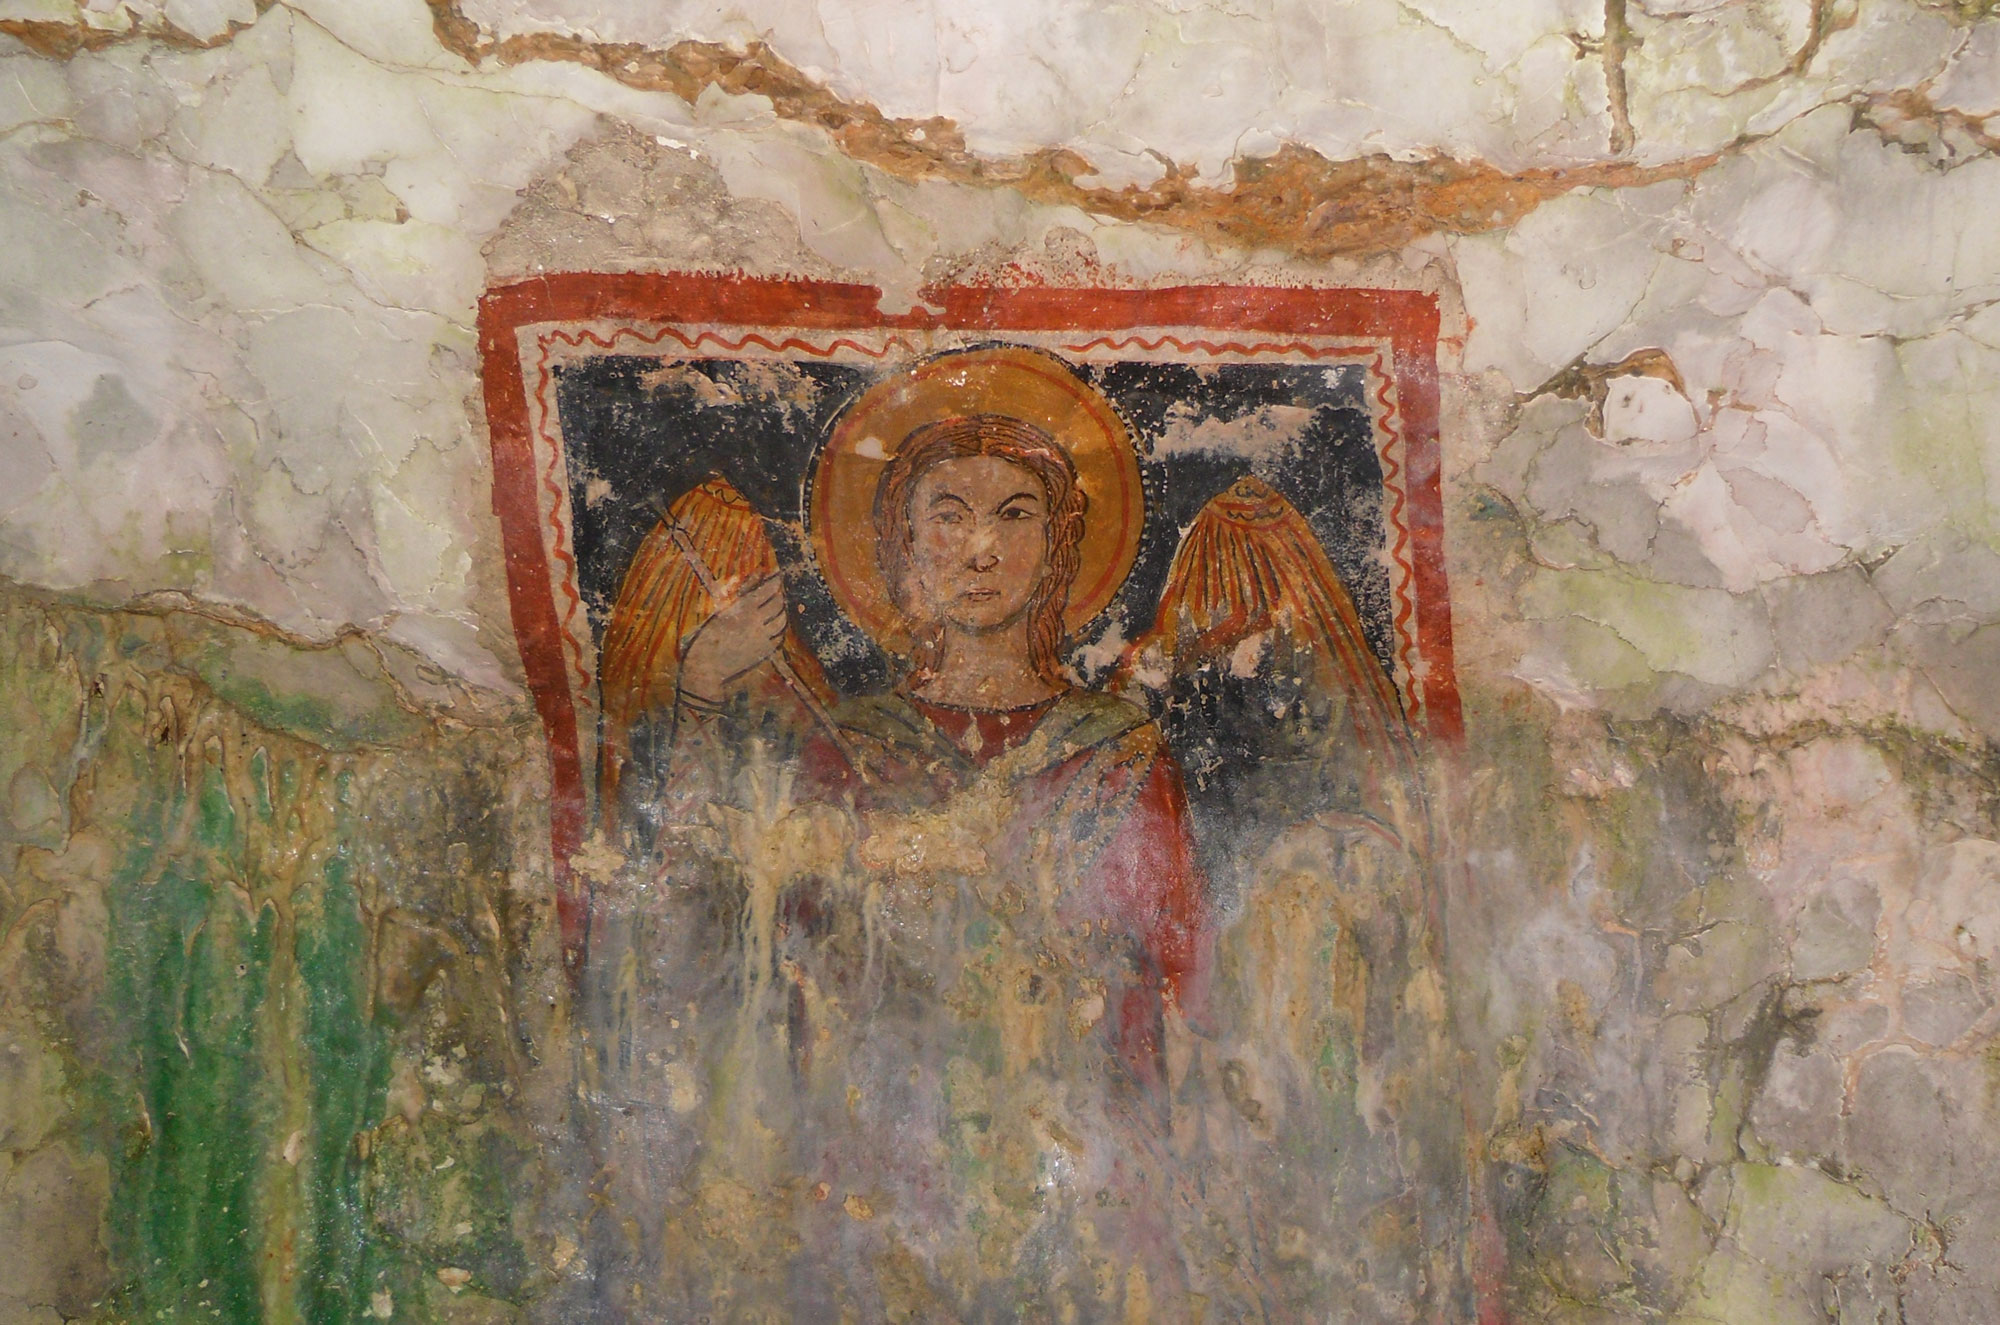 chiese rupestri, affreschi, PNAM, parco nazionale dell'Alta Murgia